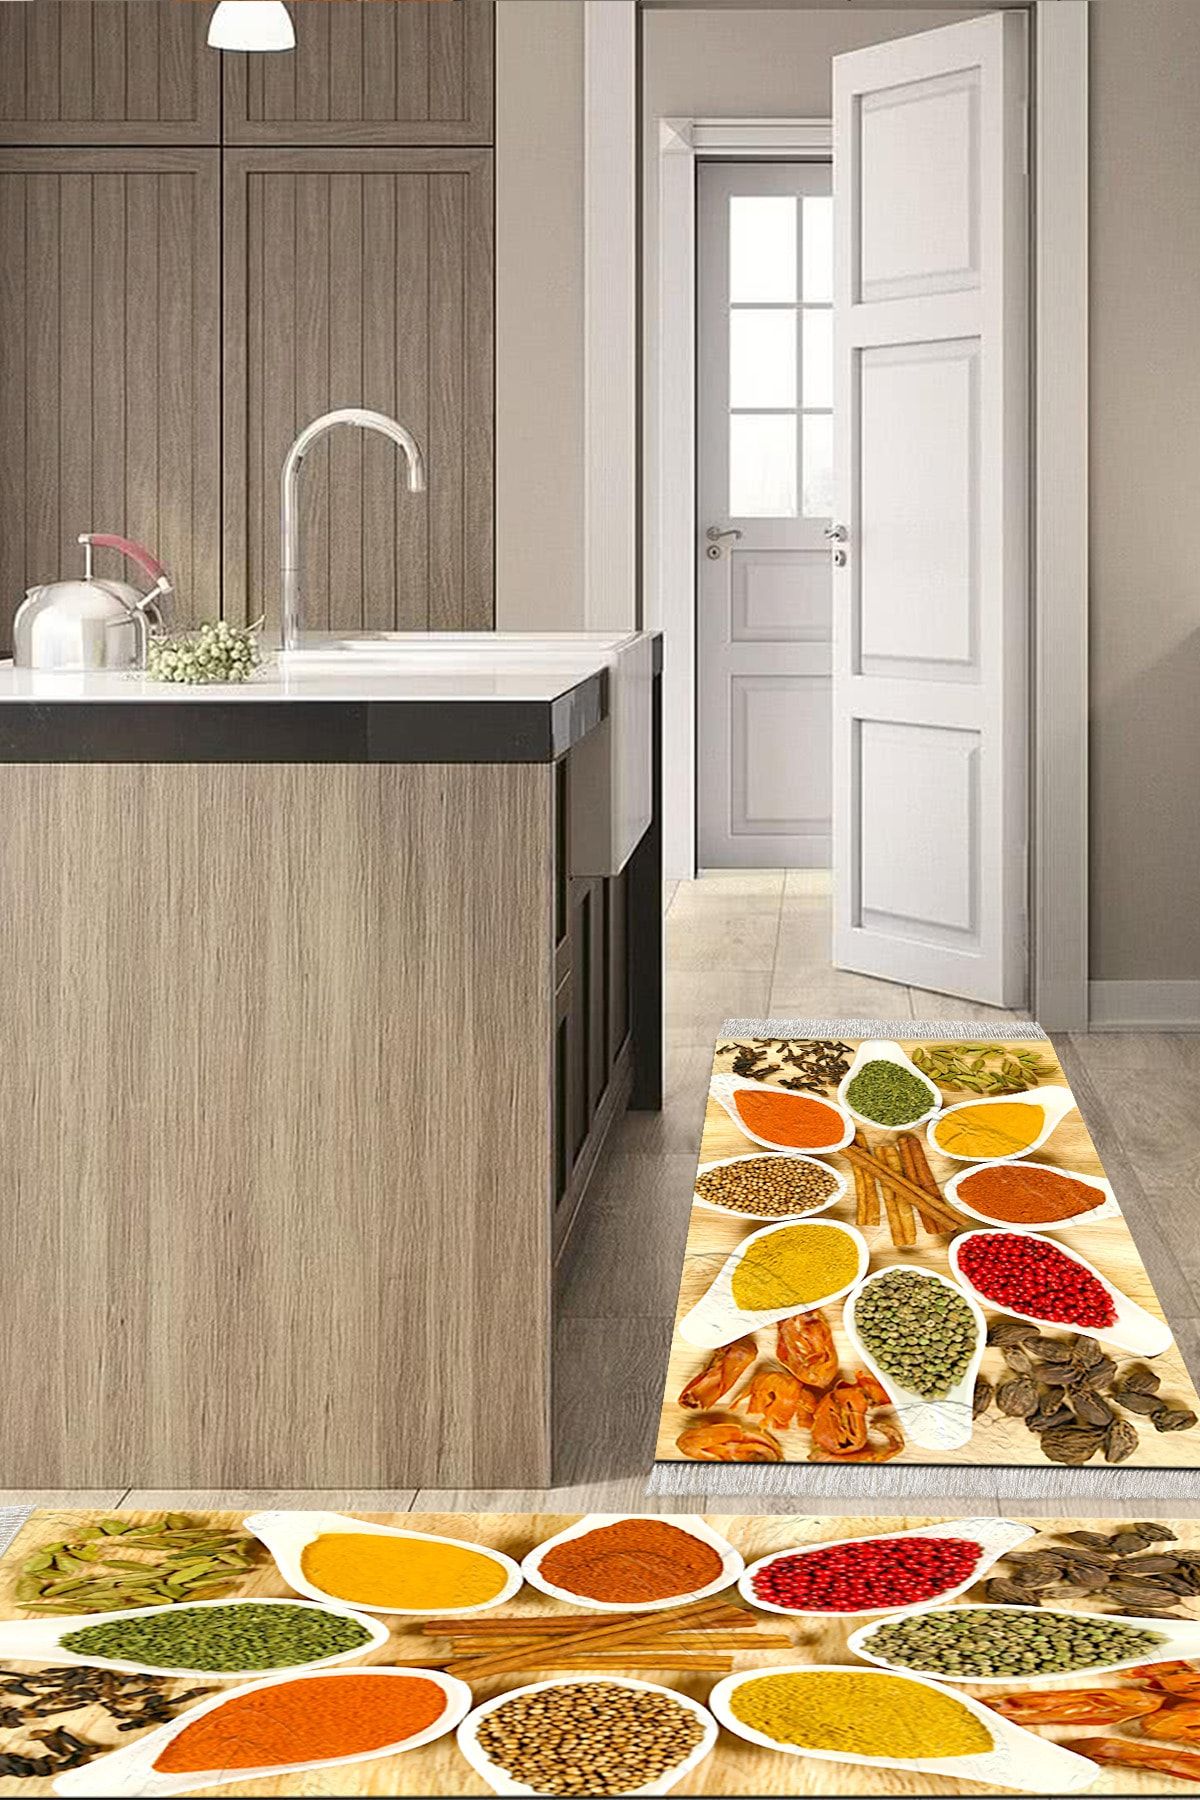 Alanur Home Eko Trend Djt 2 Li Yıkanabilir Kaymaz Taban Mutfak Halısı Seti F5066 Mutfak Renkli